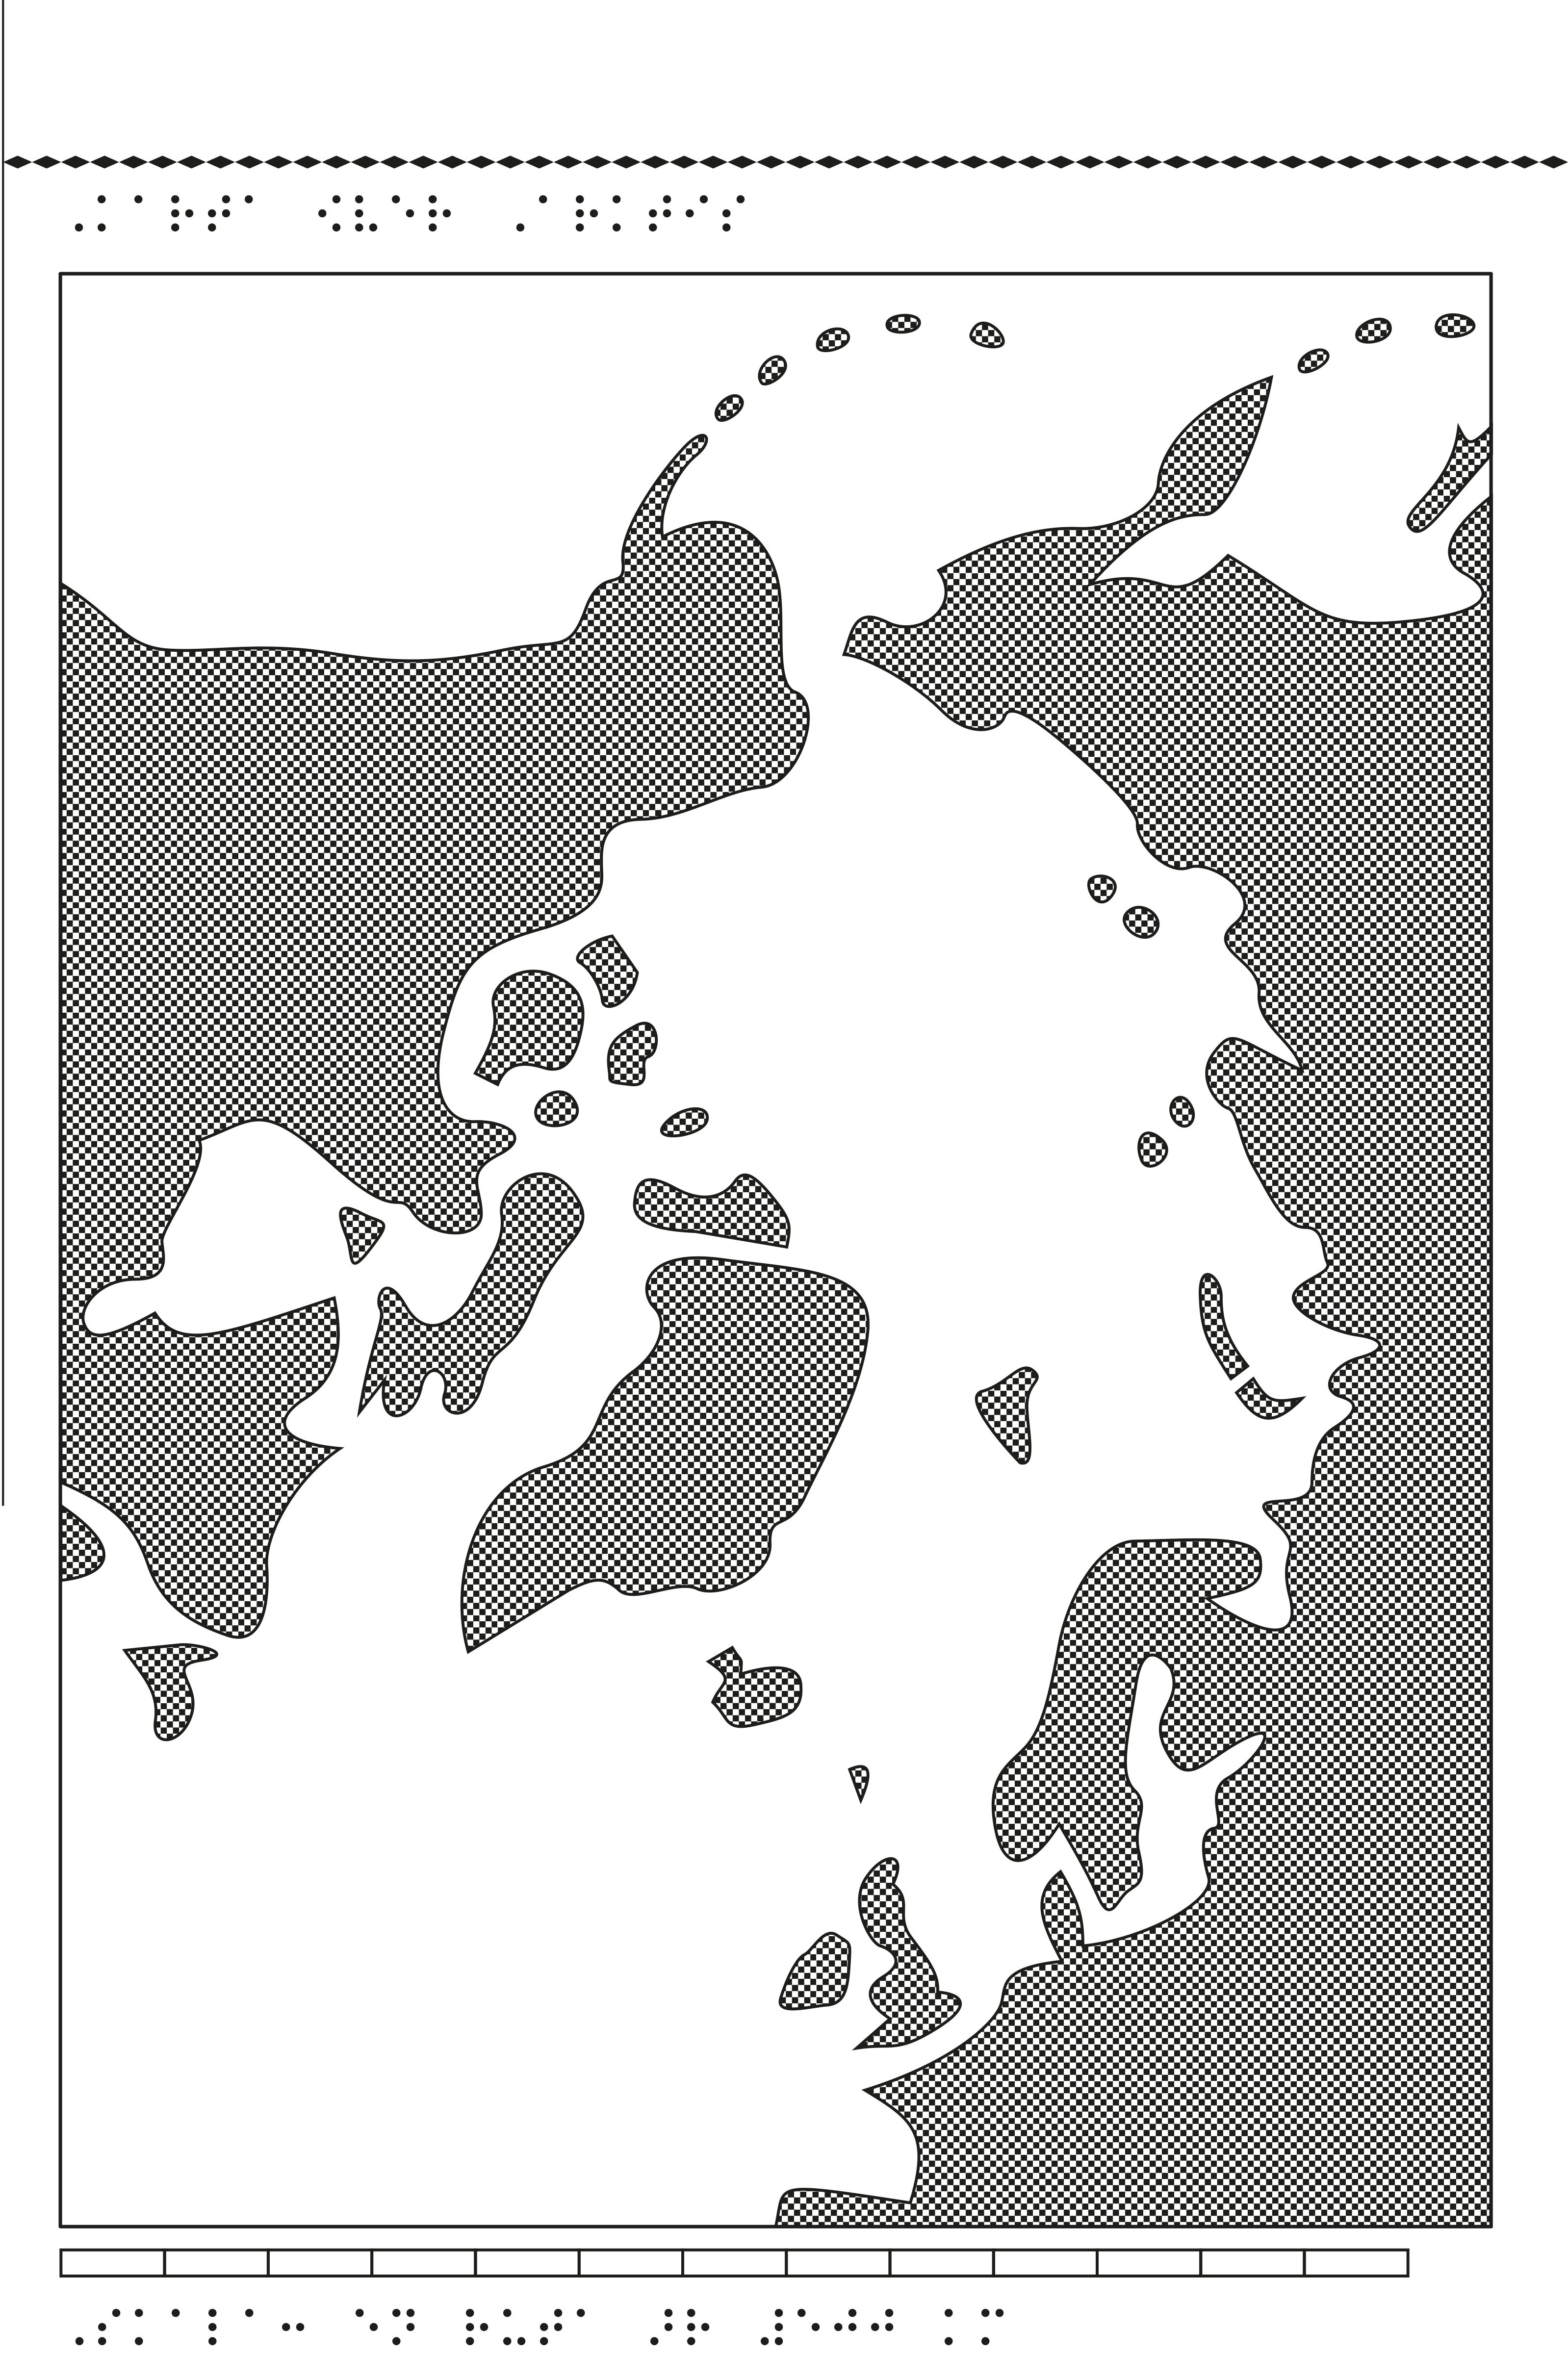 En karta över Arktis.